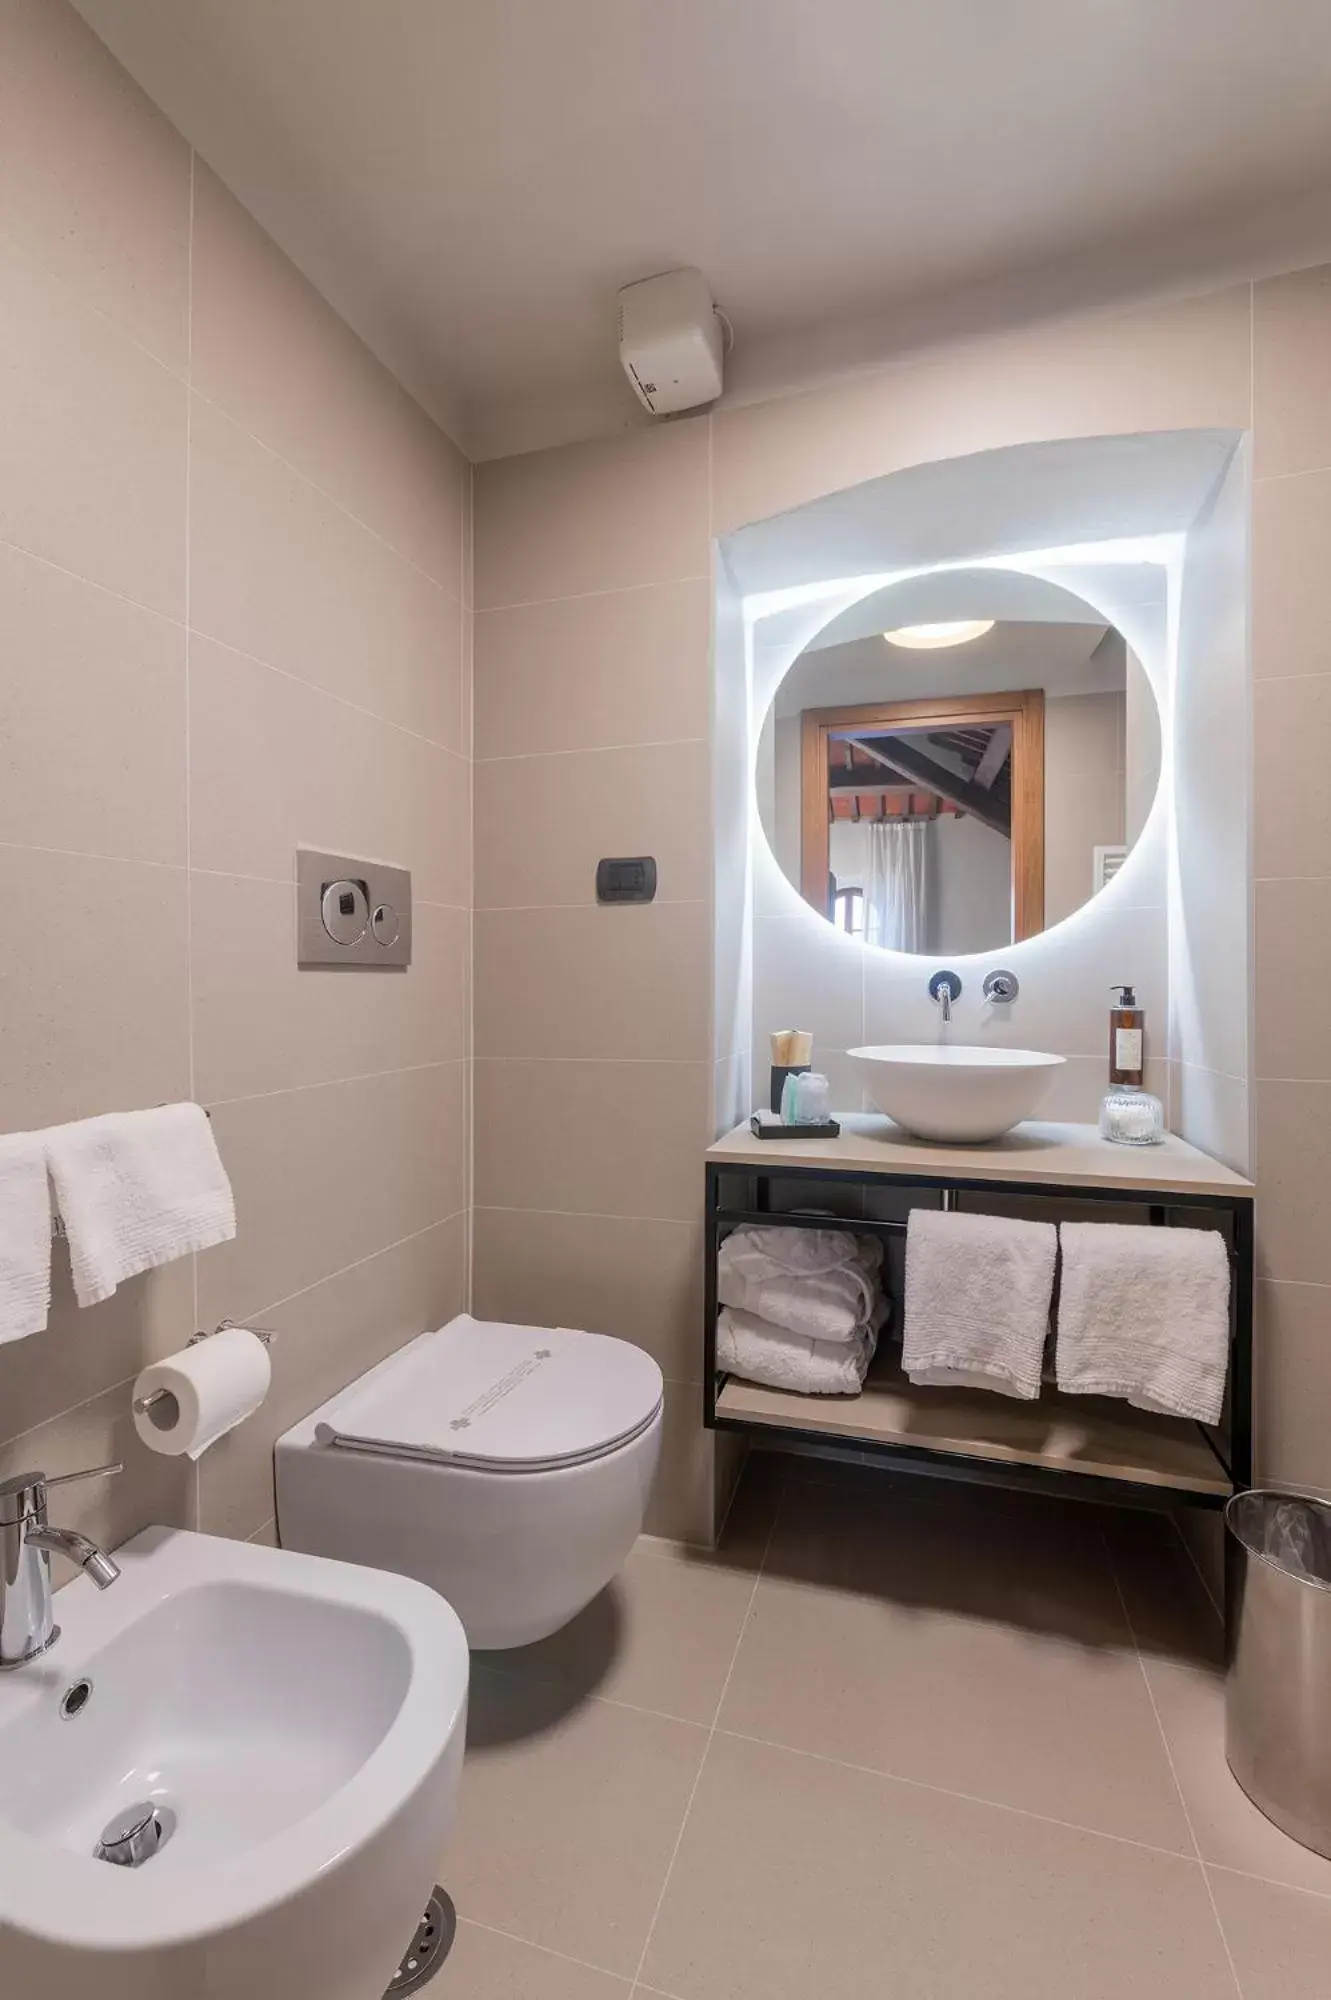 Bathroom in Hotel Gattapone